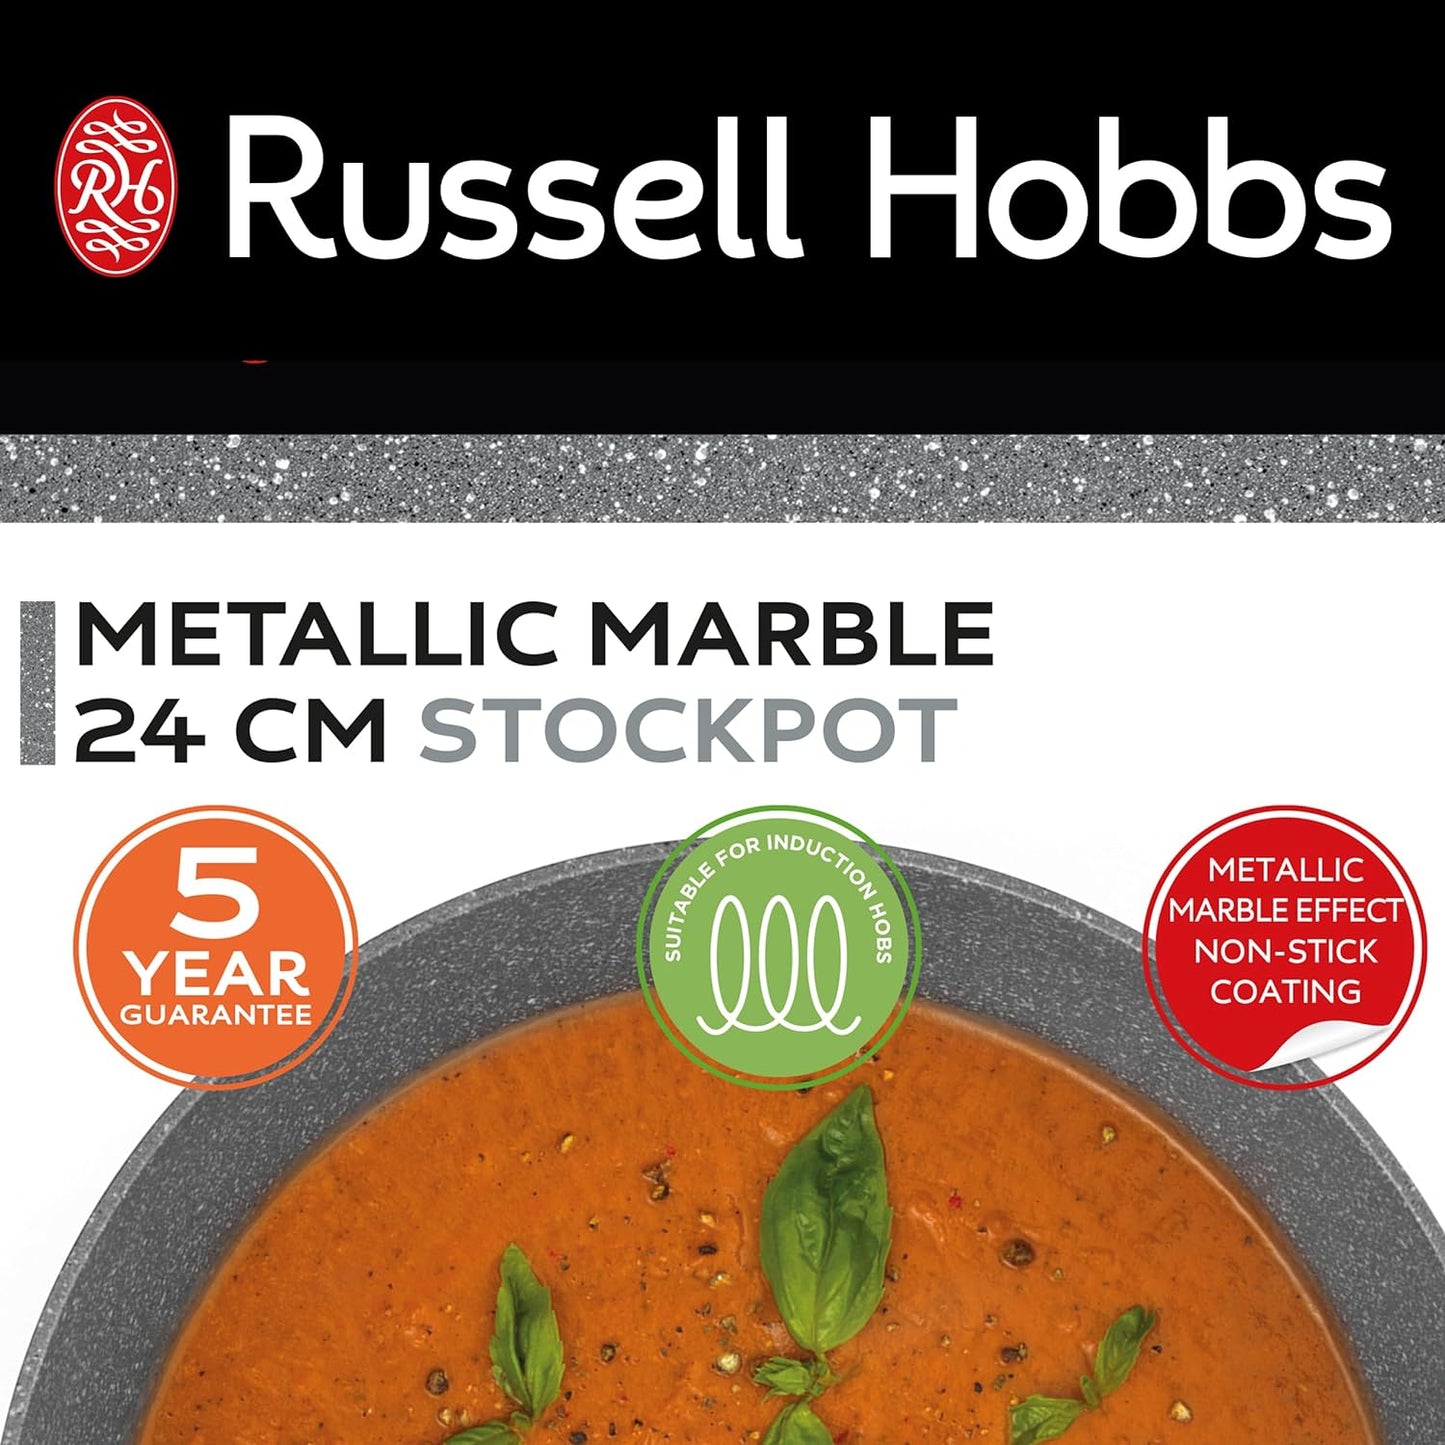 Кастрюля с антипригарным покрытием, Russell Hobbs RH02809EU7 Metallic Marble, 24см